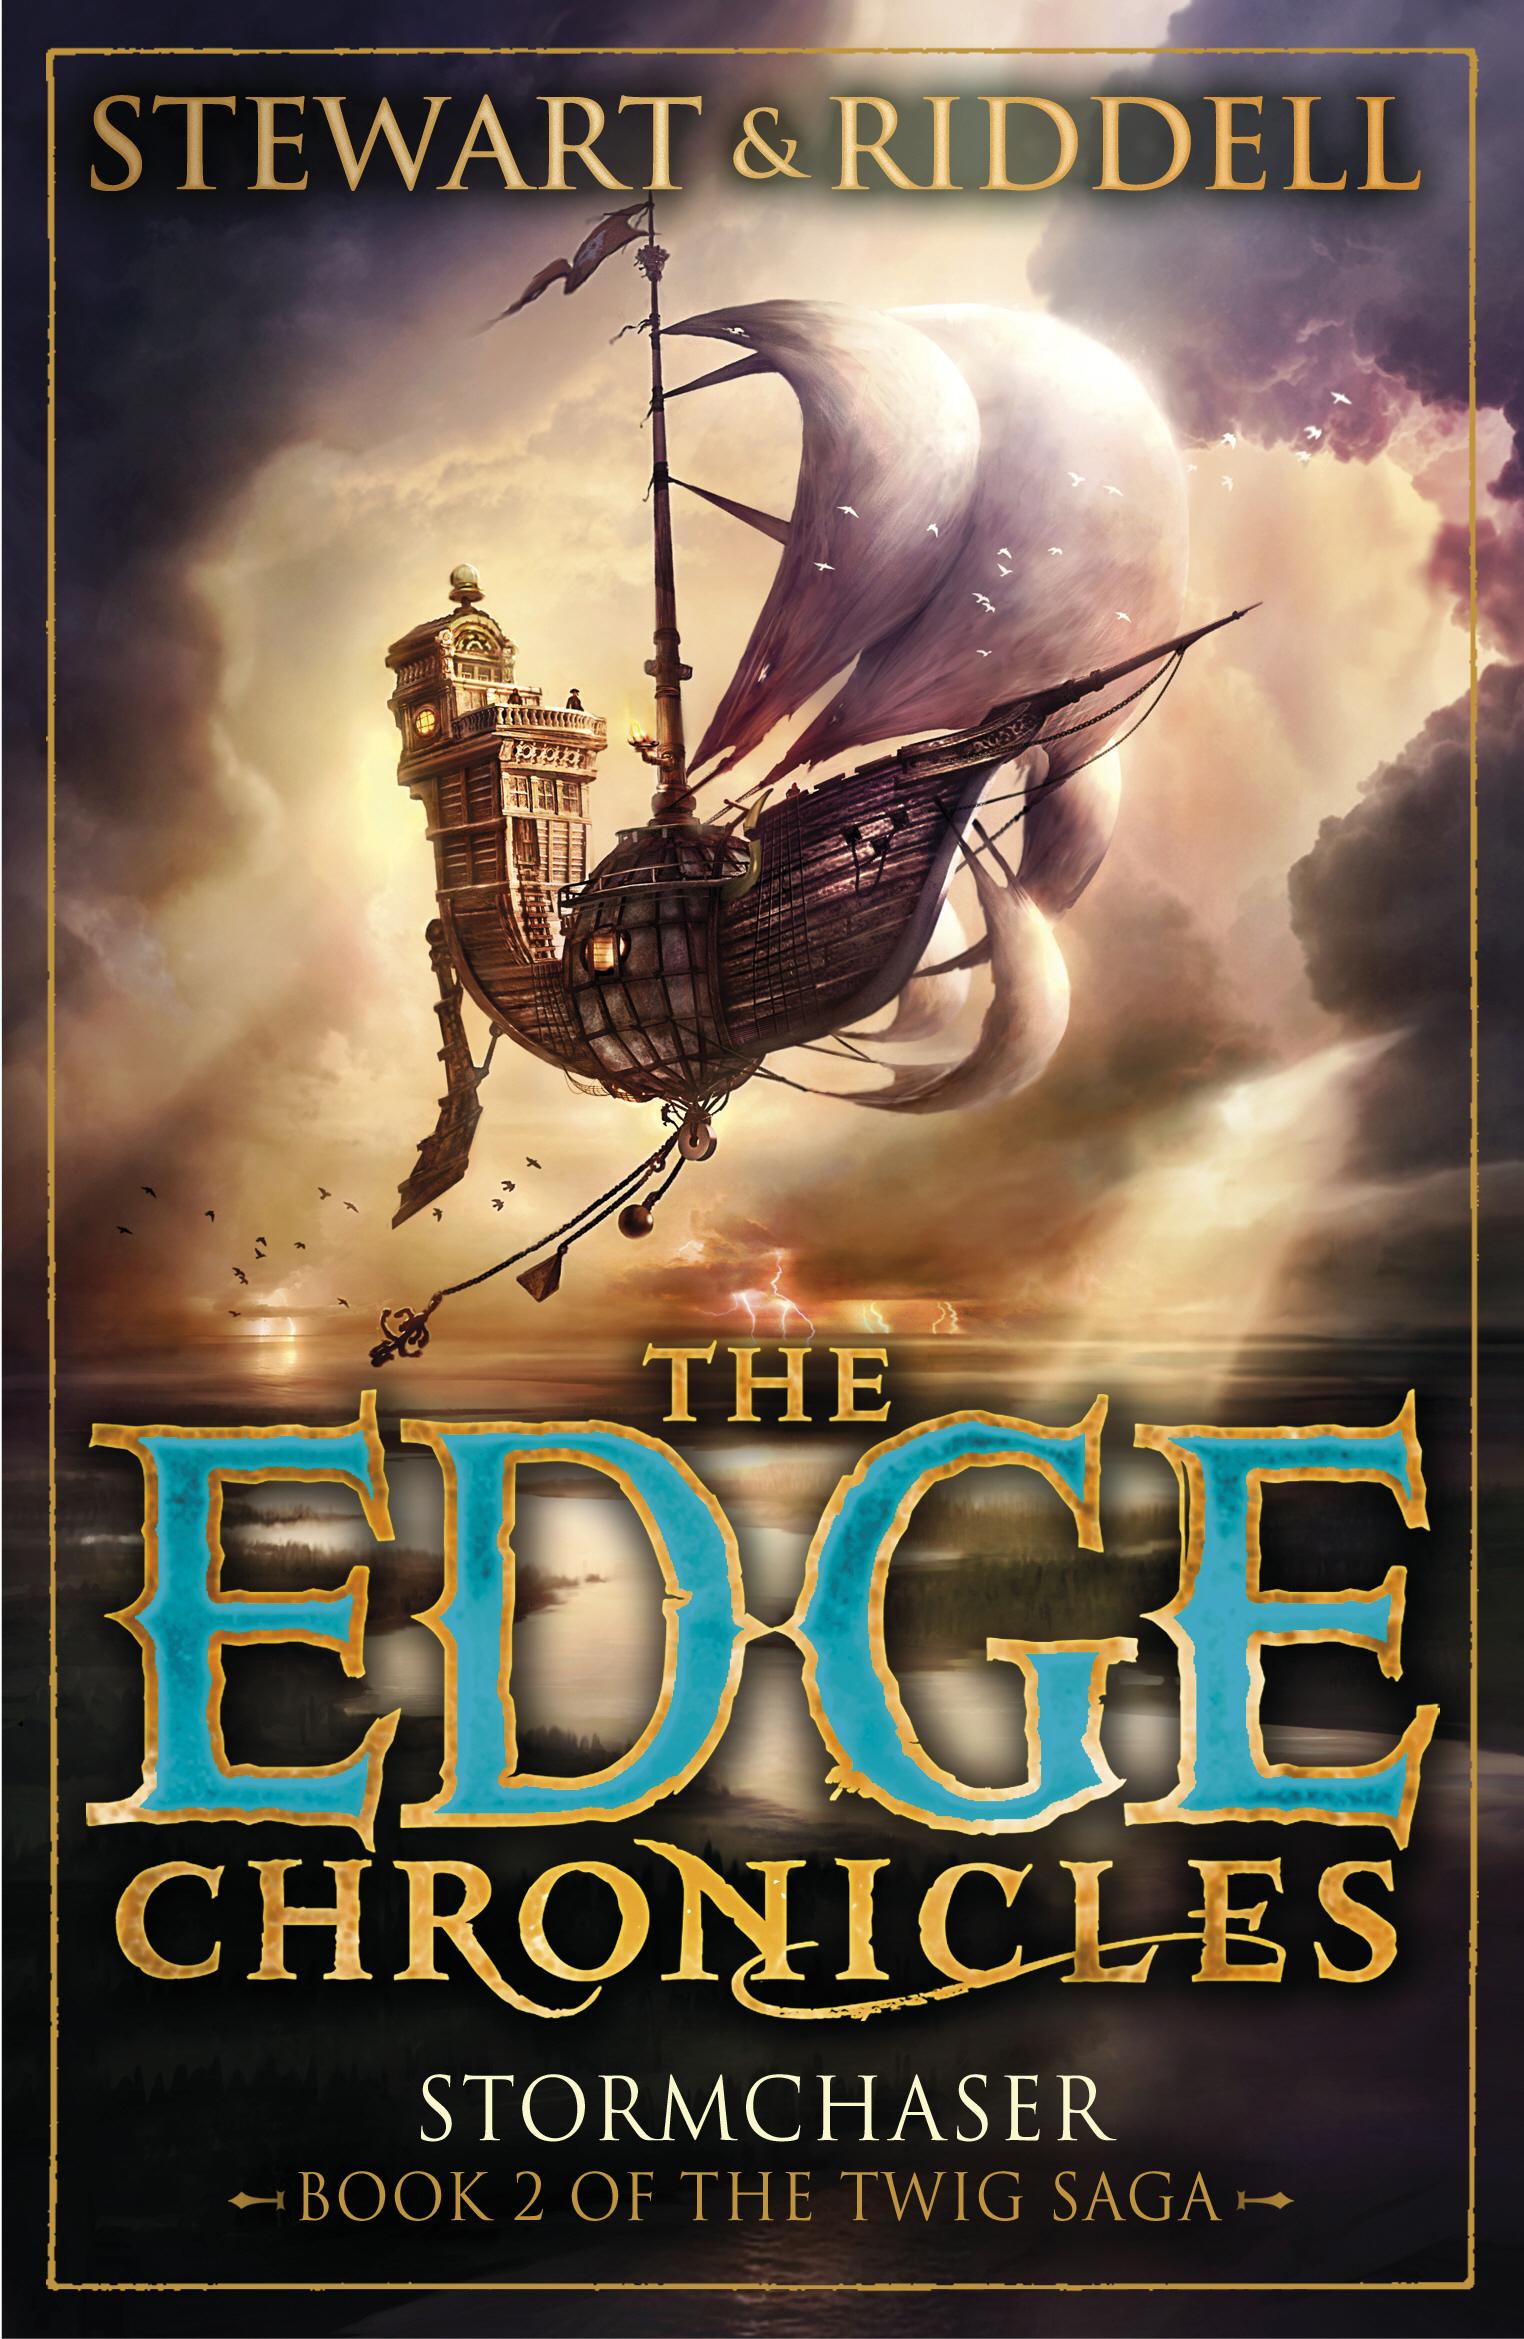 Edge Chronicles 5: Stormchaser